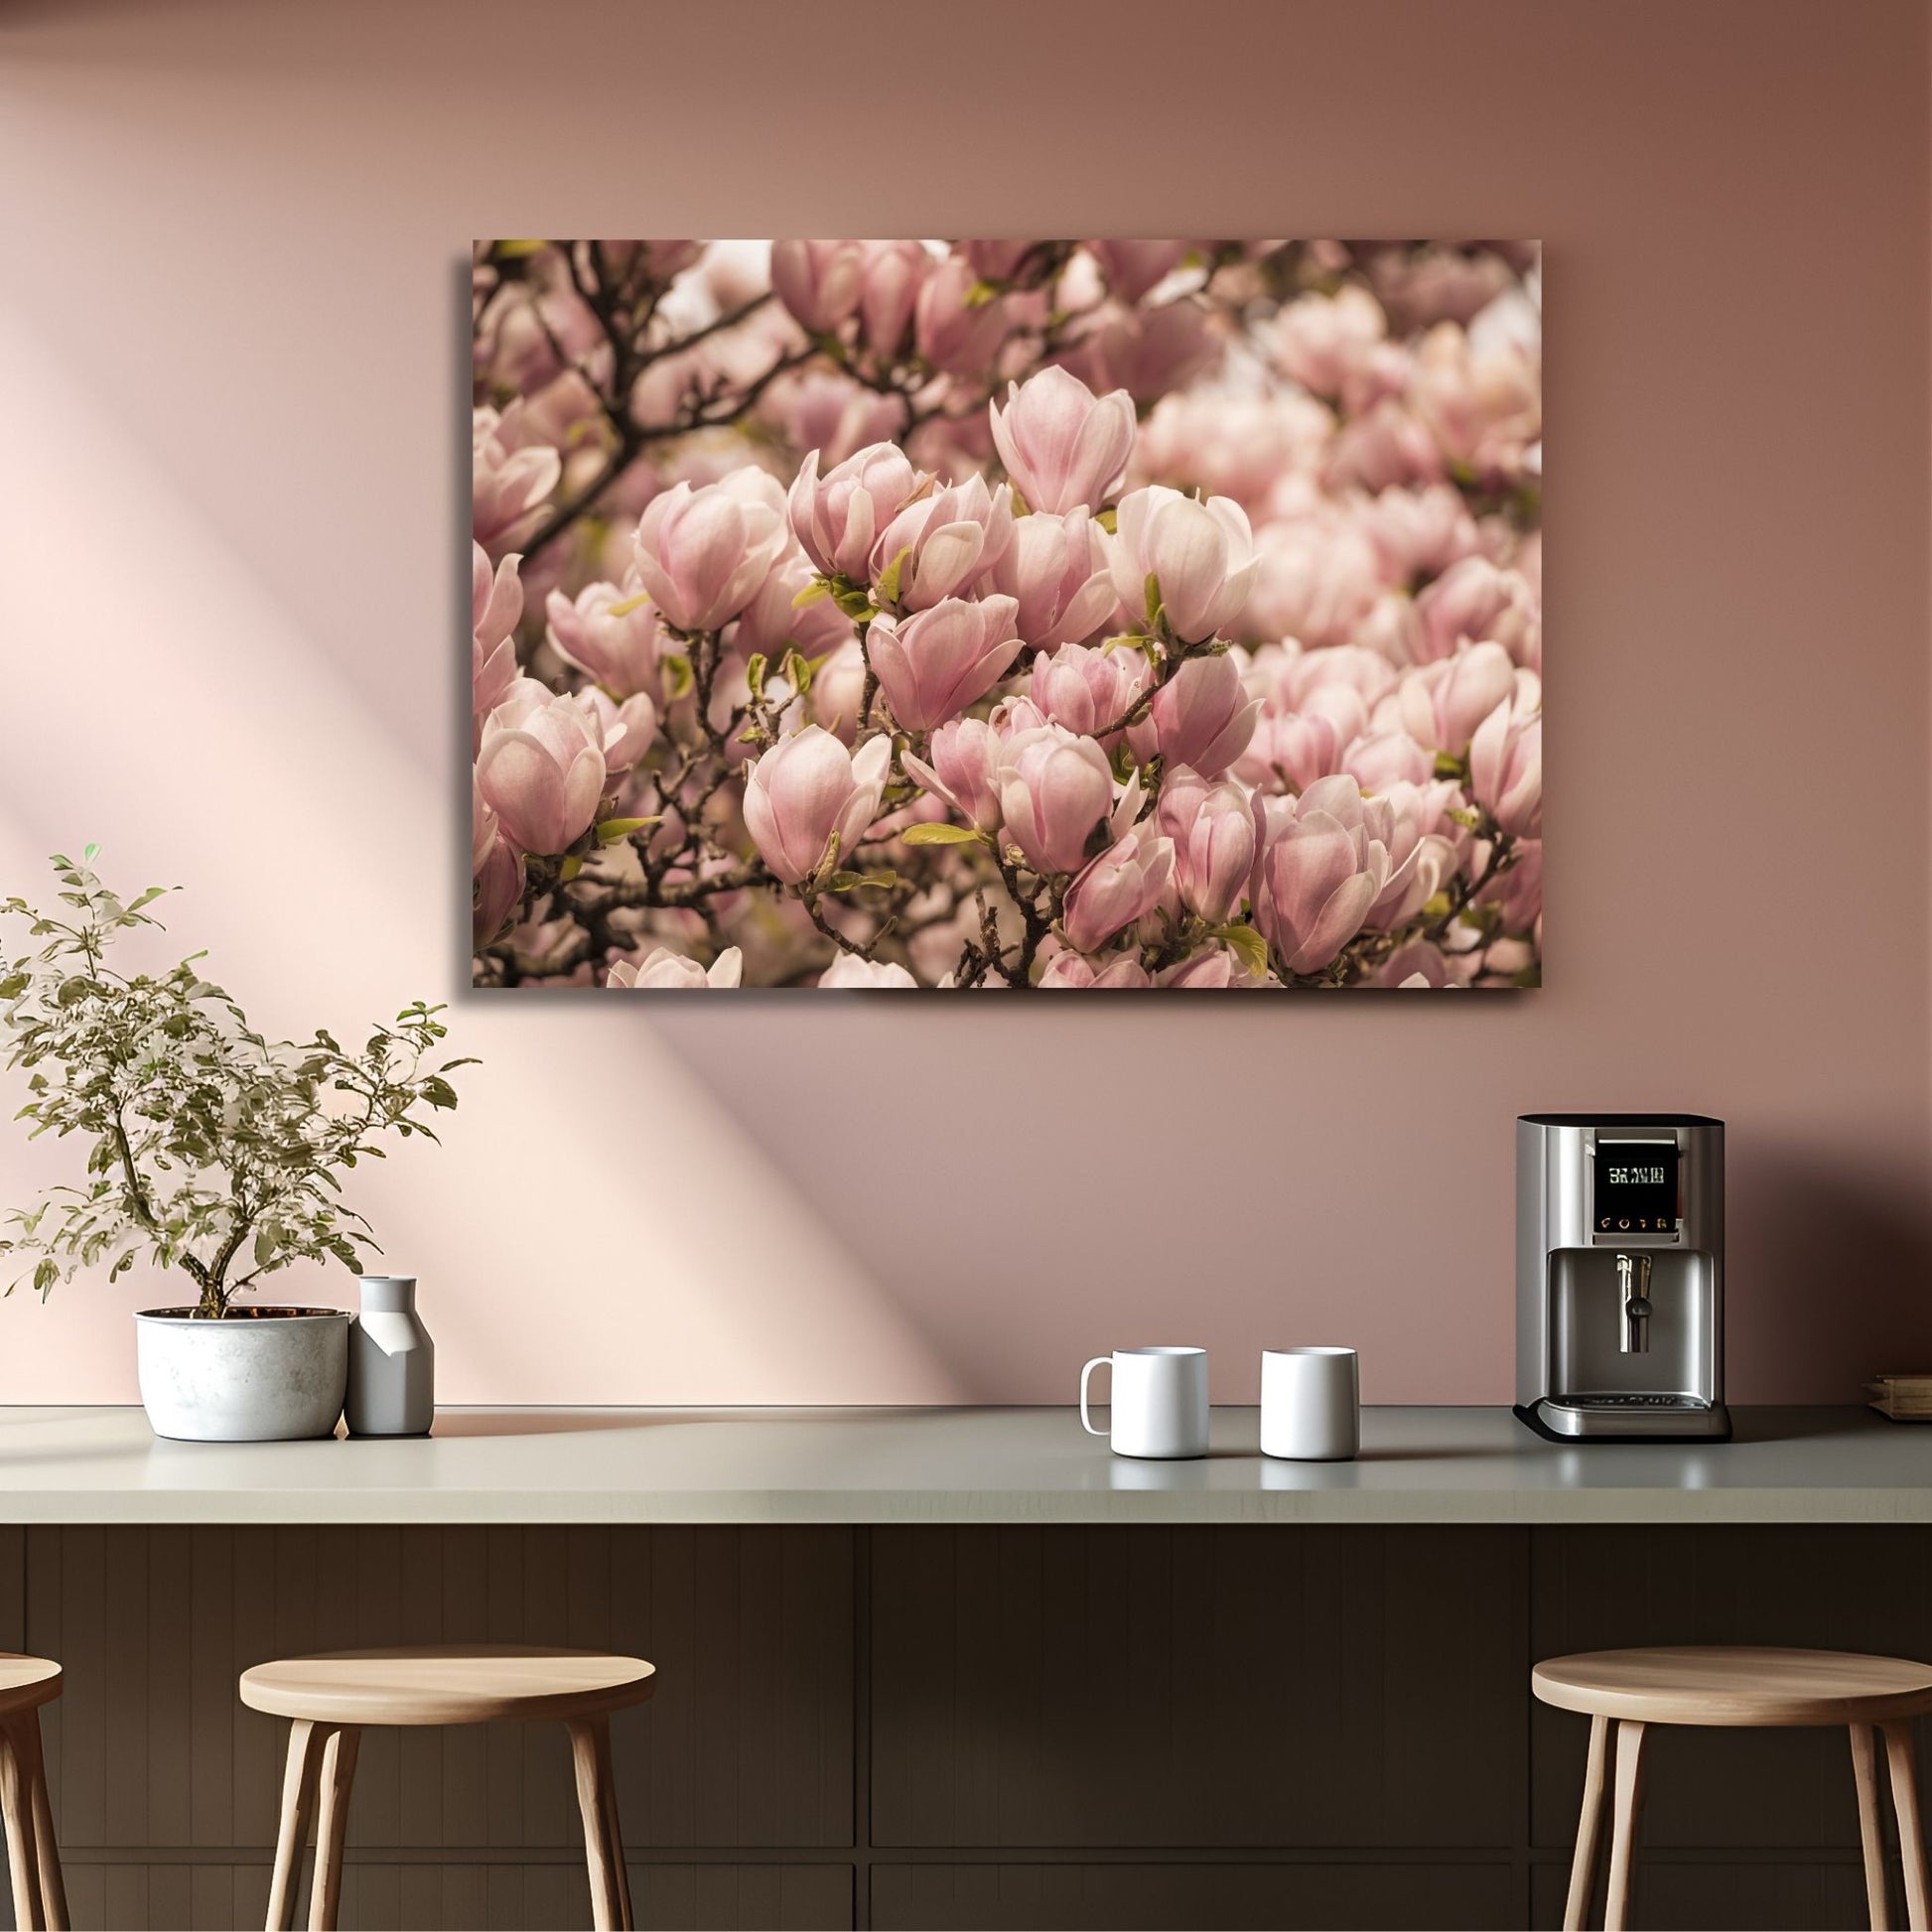 Fotografi av et Magnolia tre i full blomstring, med delikate rosa blomster. Illustrasjonen viser motiver på lerret som henger over et bord.